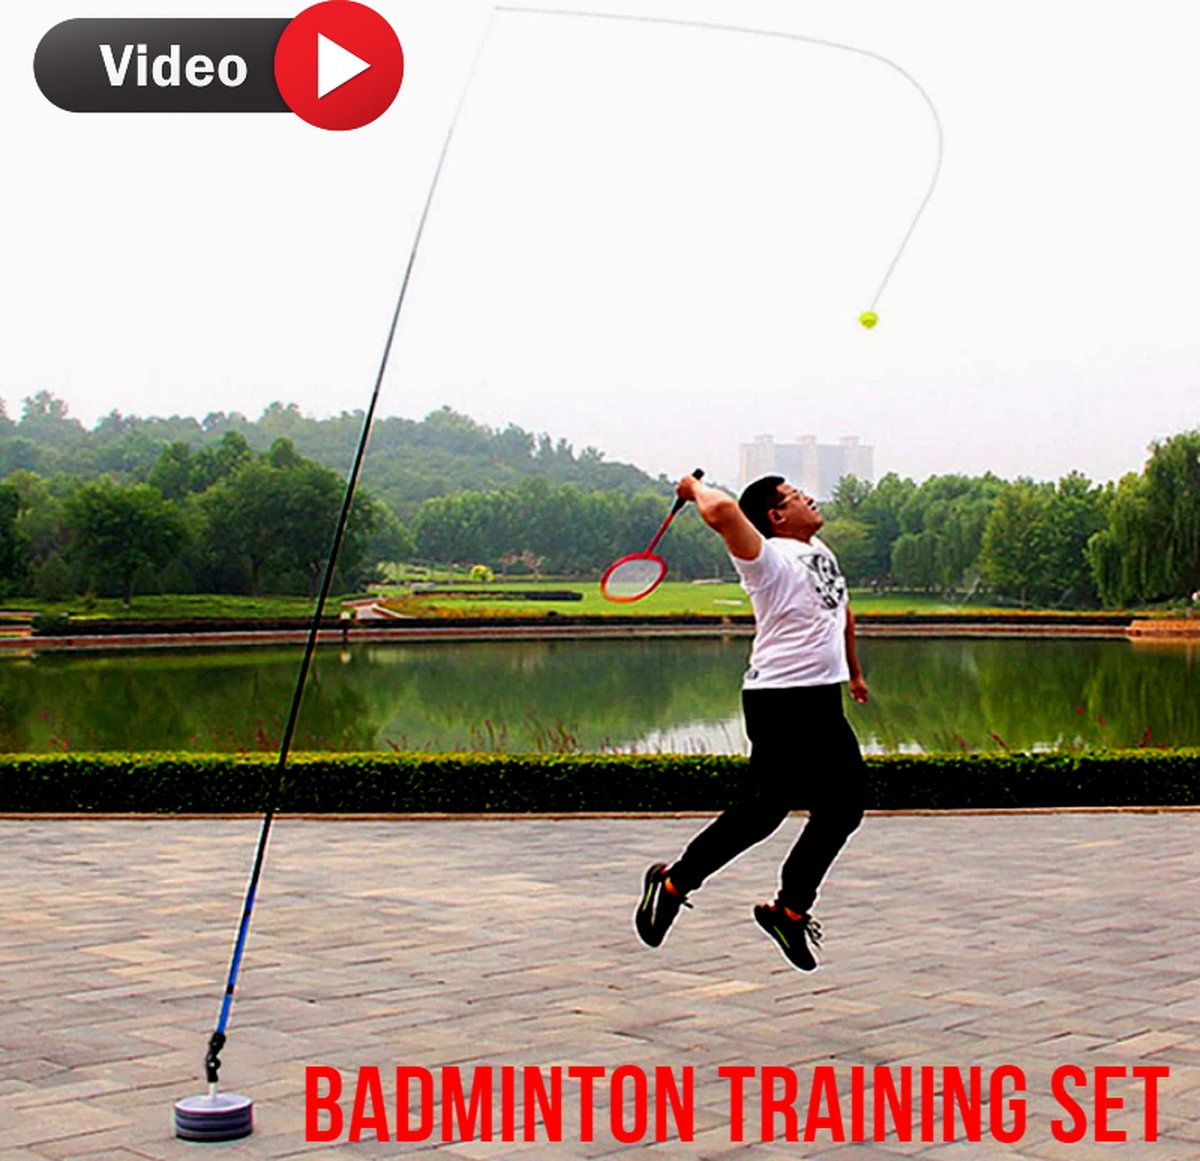 Allernieuwste.nl® Badminton Trainer Oefenapparaat Training incl Racket en Shuttles Set - Badminton Sport - Tennis Set - Buitensport Kinderen en Volwassenen - Speelset - Merkloos